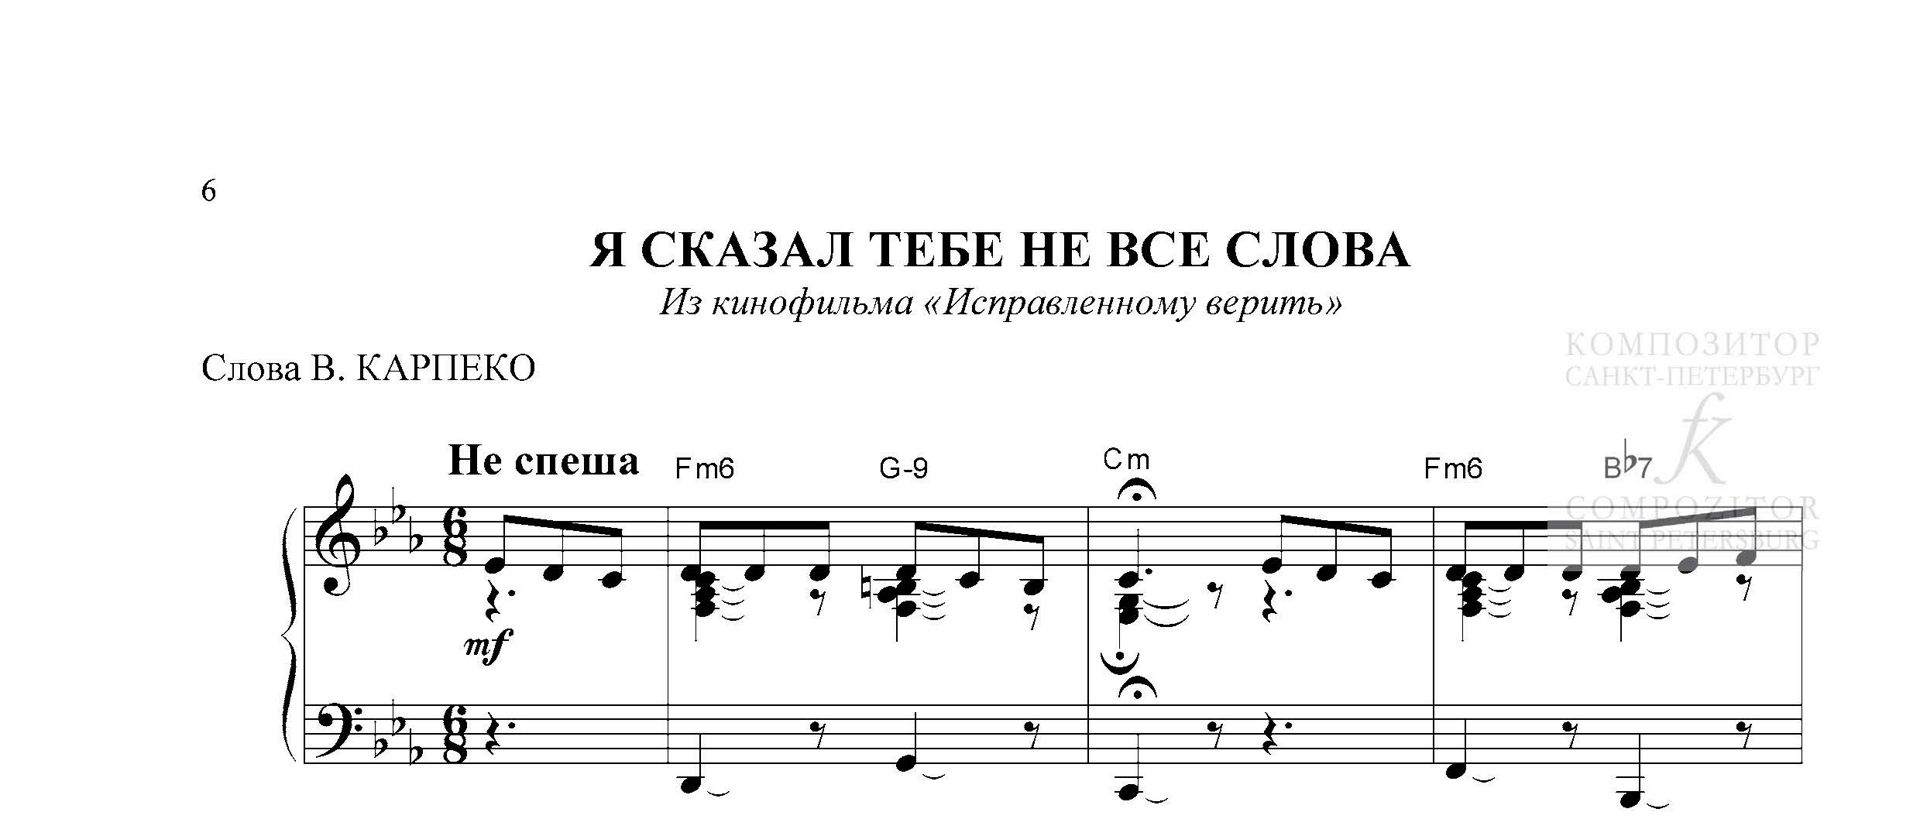 А СНЕГ ИДЕТ. Из к/ф «Карьера Димы Горина». Андрей Эшпай. Легкое переложение для фортепиано (гитары).